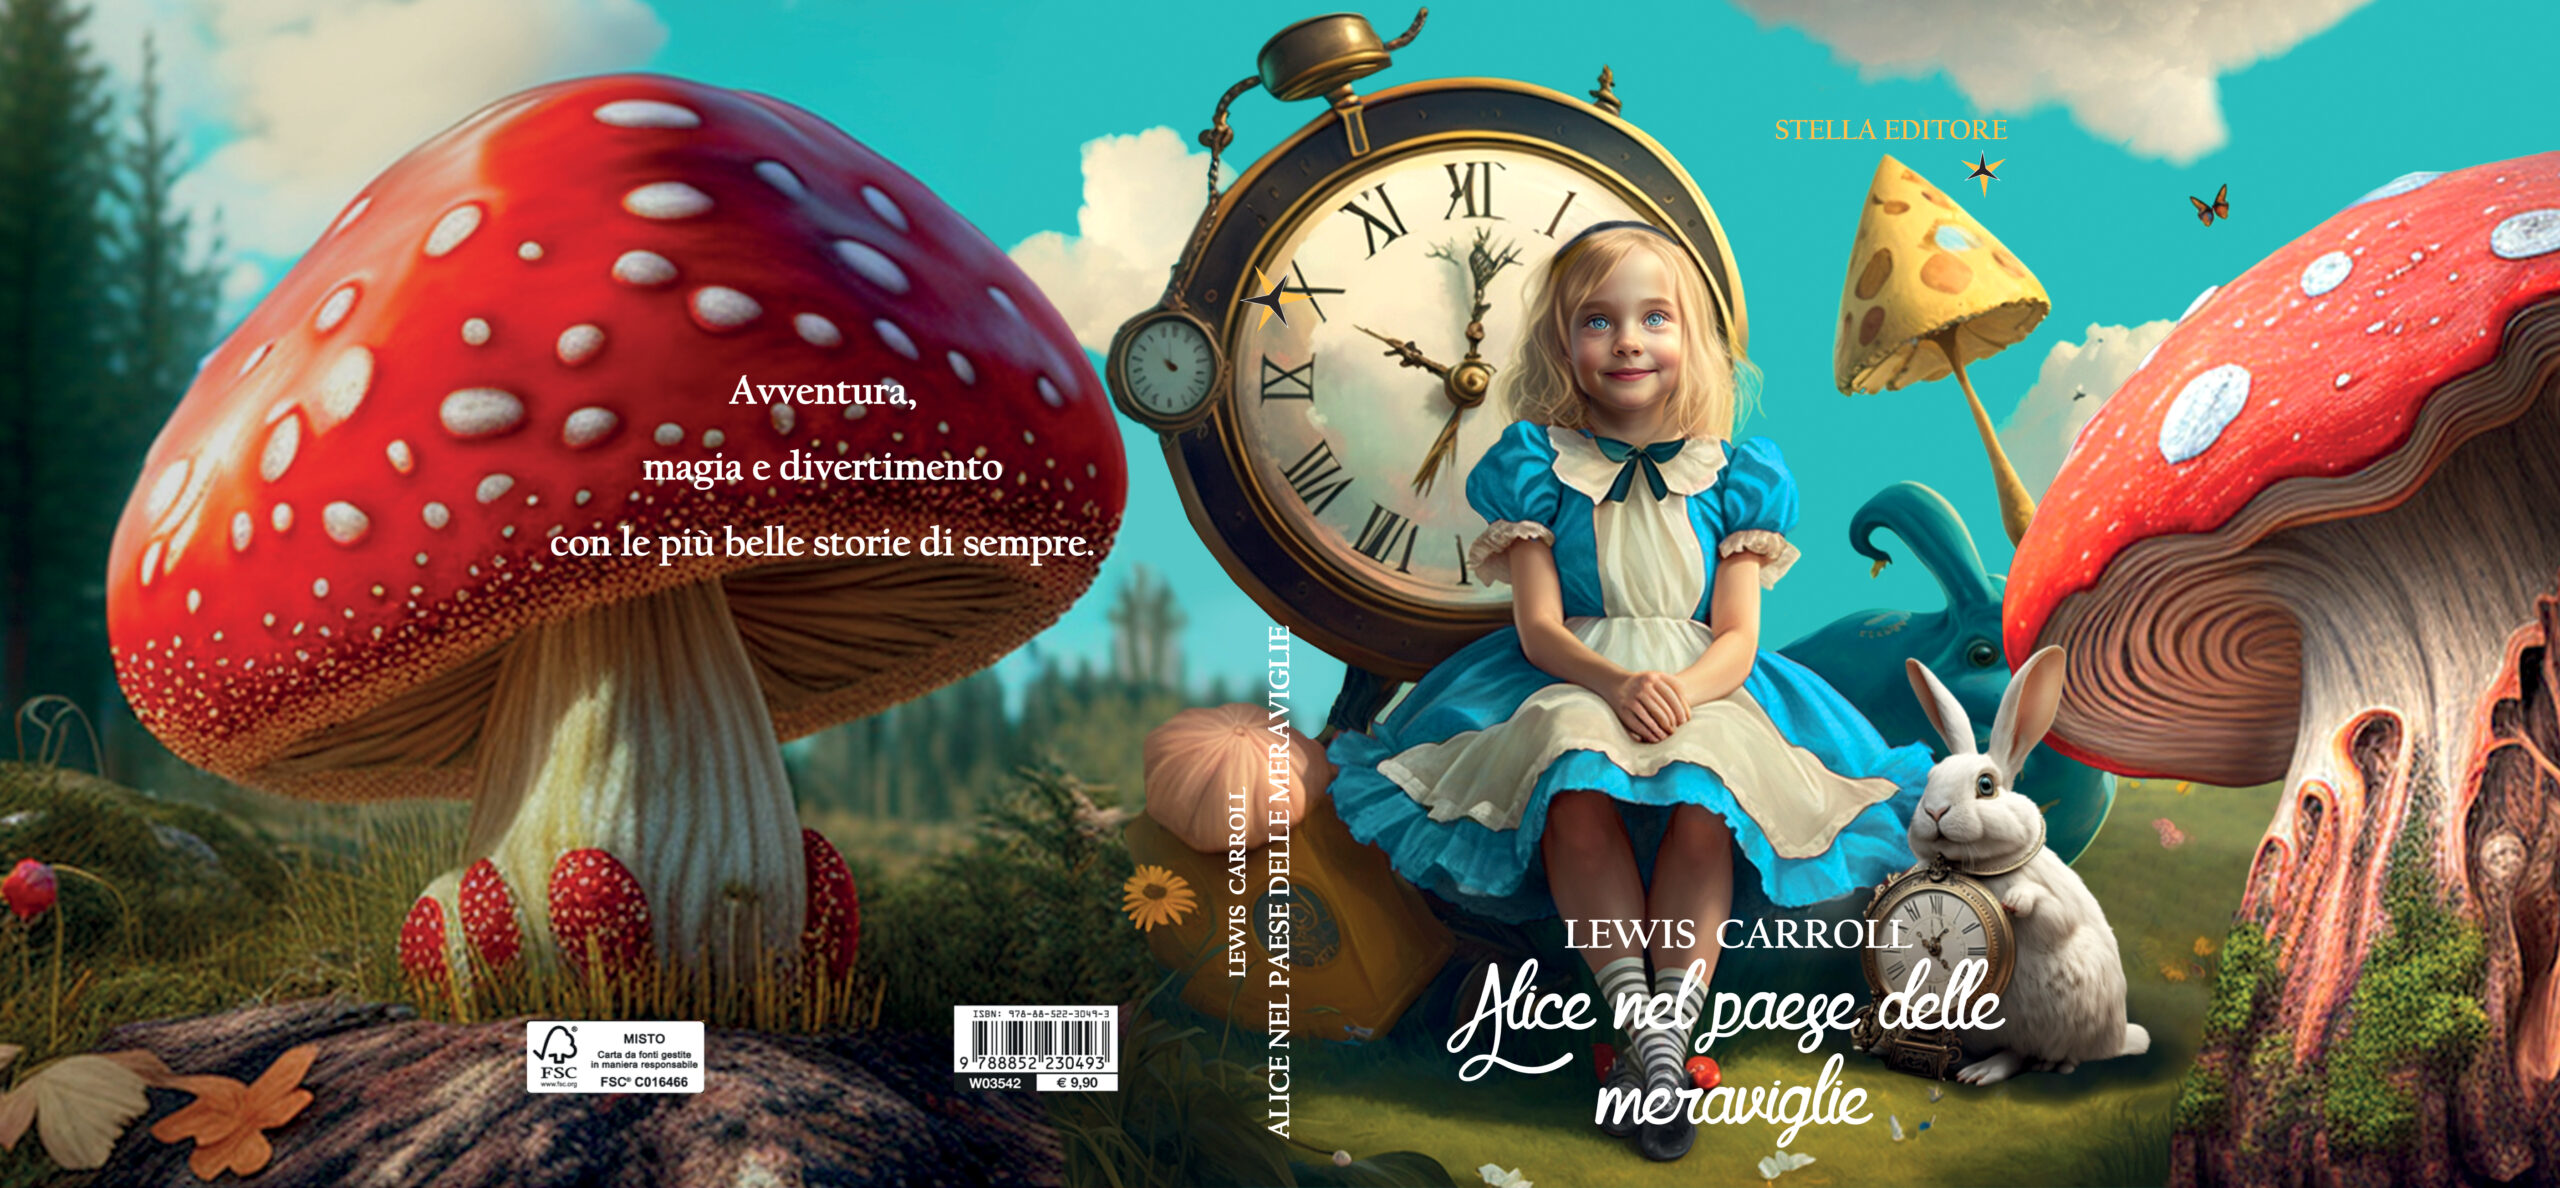 Sovracopertina libro "Alice nel paese delle meraviglie". Personaggi creati con l'AI Midjourney, fotocomposizione creata con Adobe Photoshop, impaginazione con Adobe Illustrator